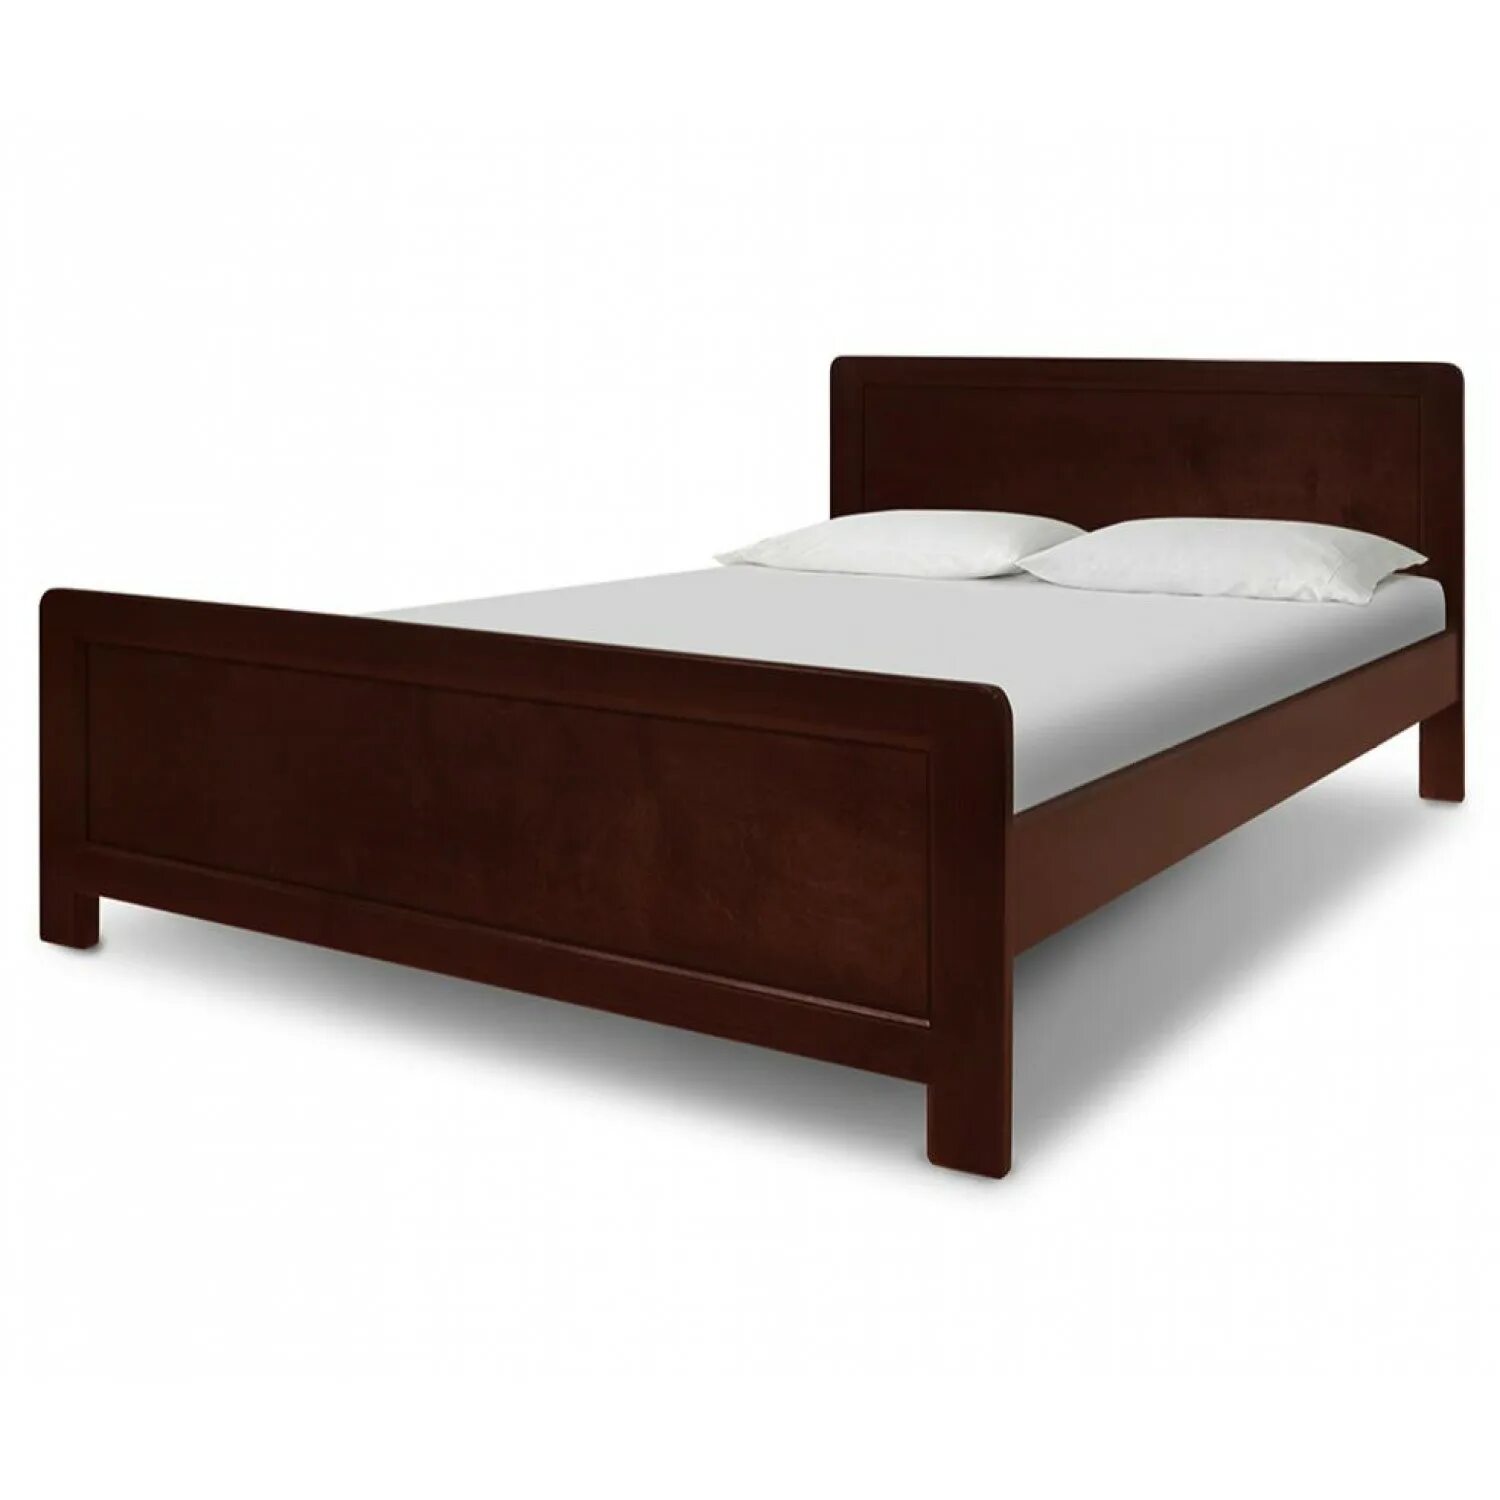 Кровать ВМК-Шале мантра. Кровать Аскона из массива. Кровать Аскона из массива сосны. Кровать массив дерева 140х200.